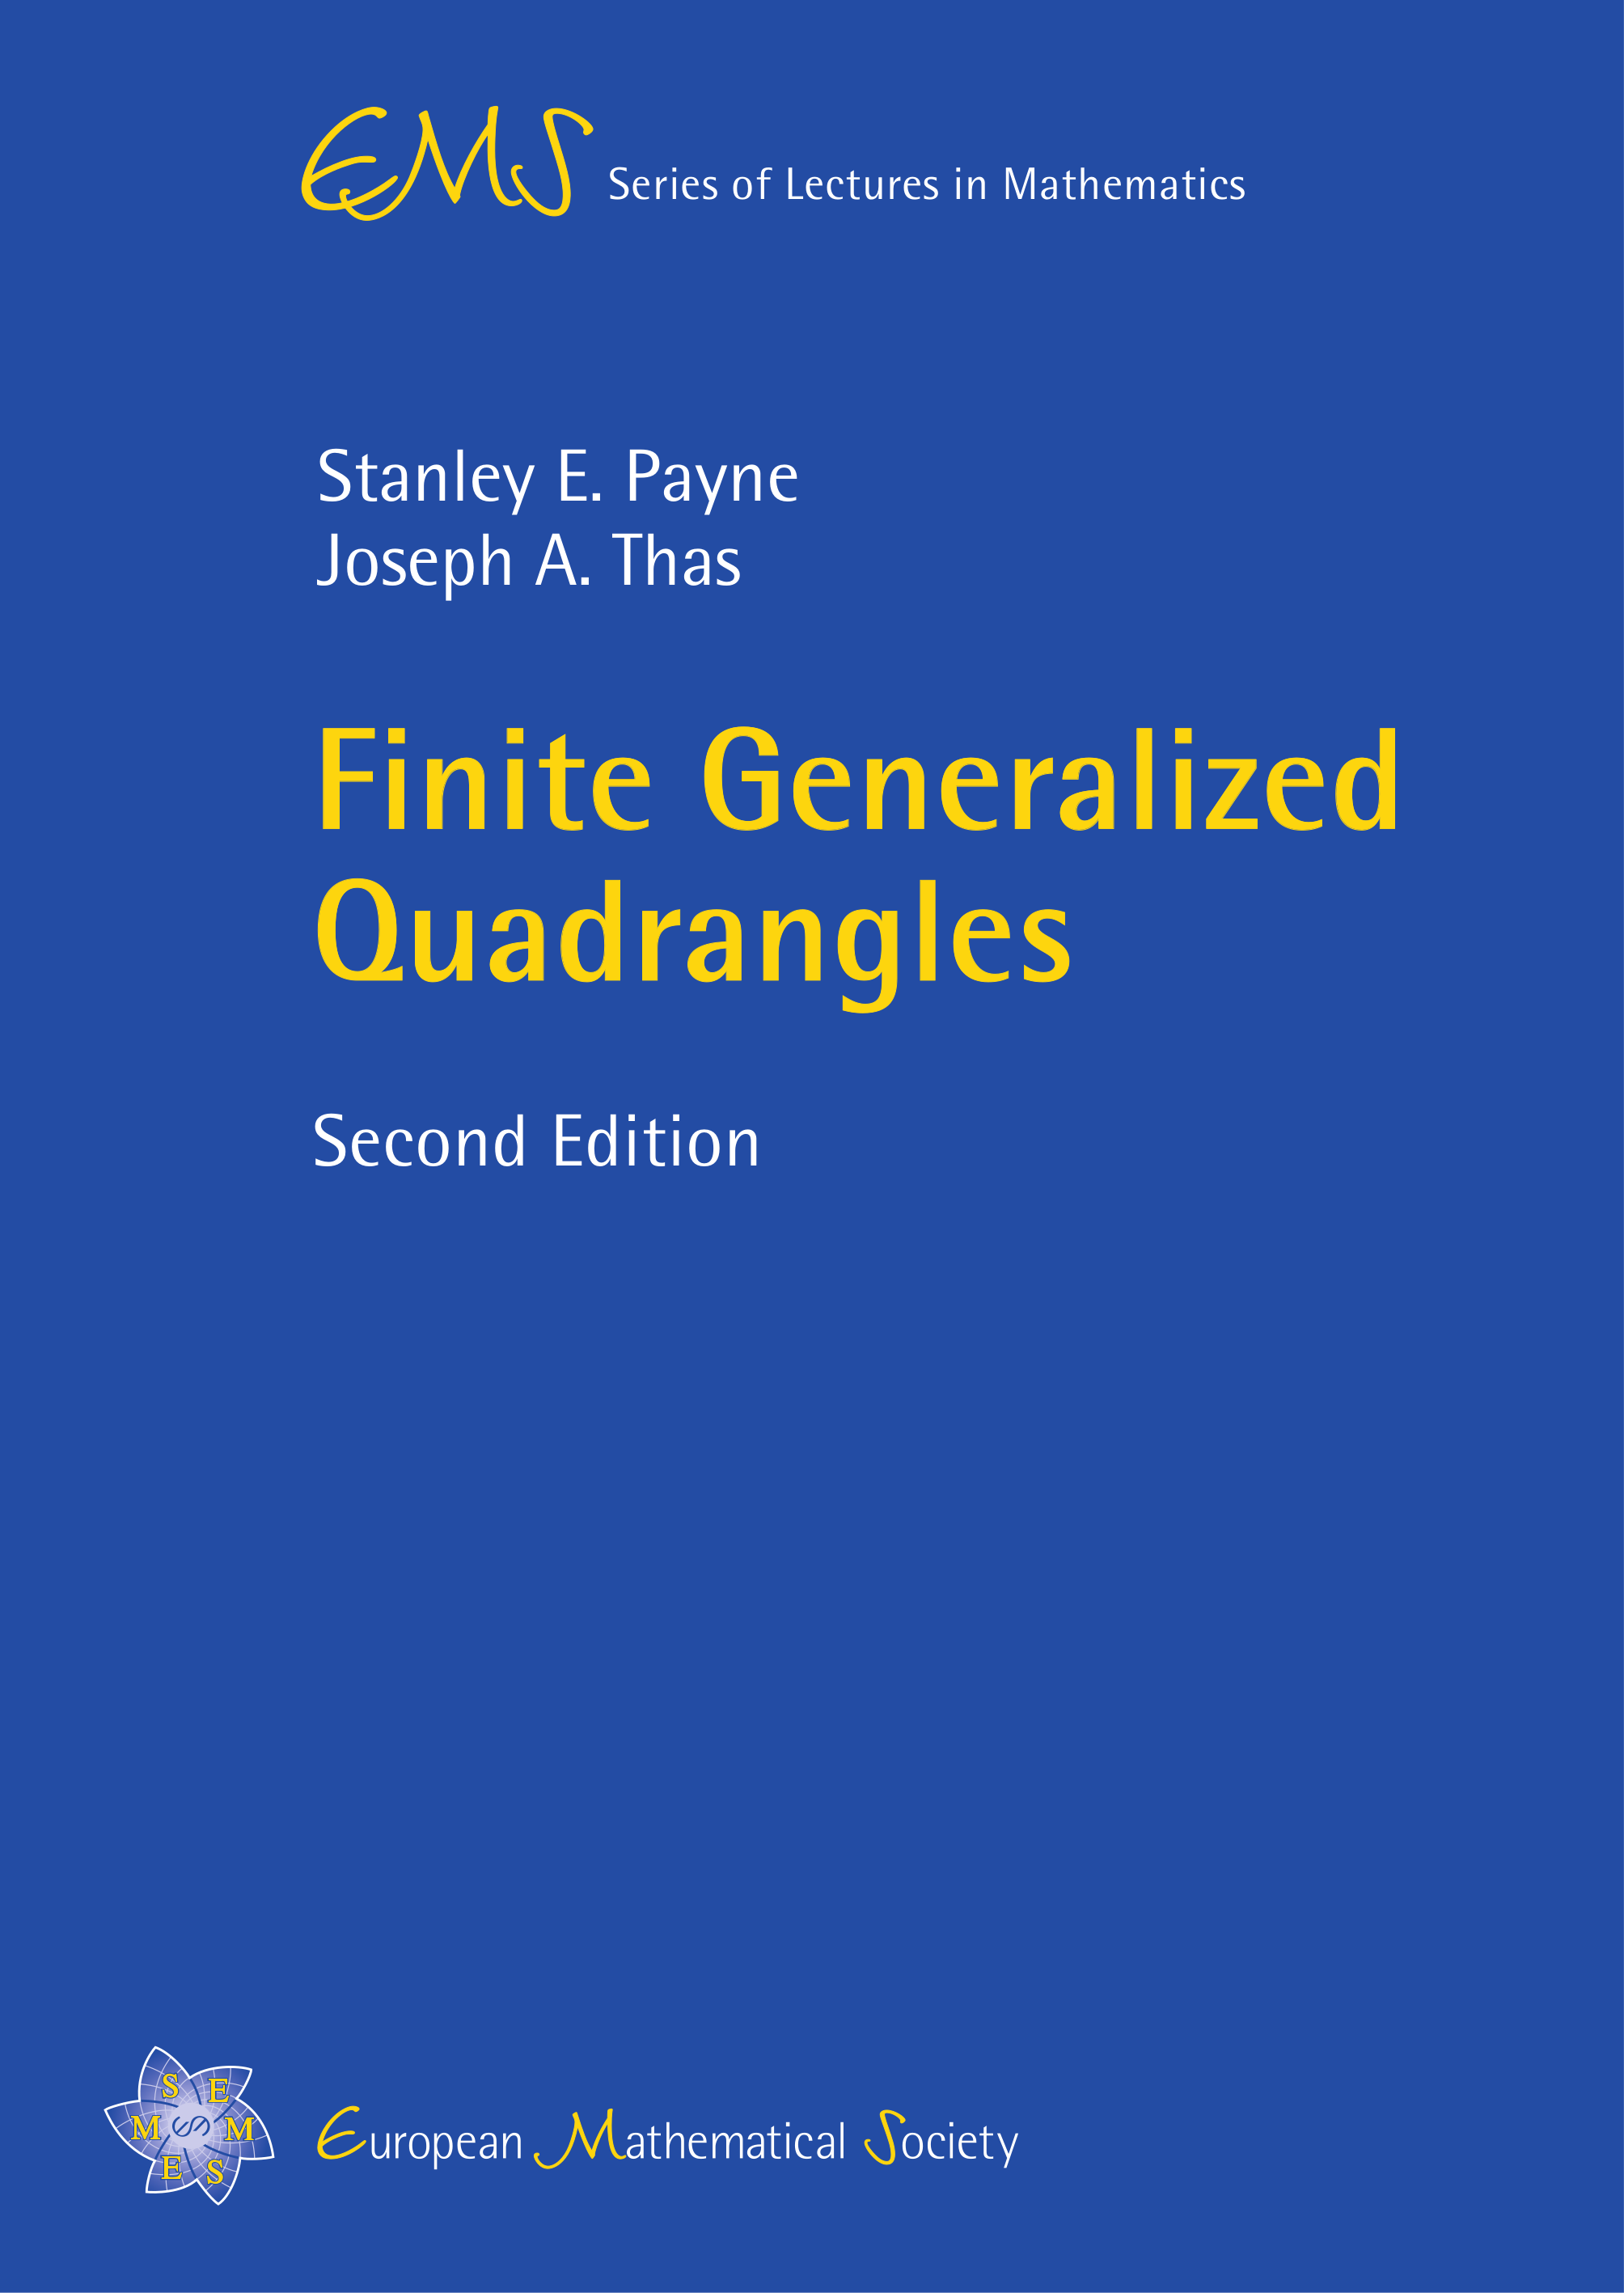 Generalized quadrangles in finite projective spaces cover